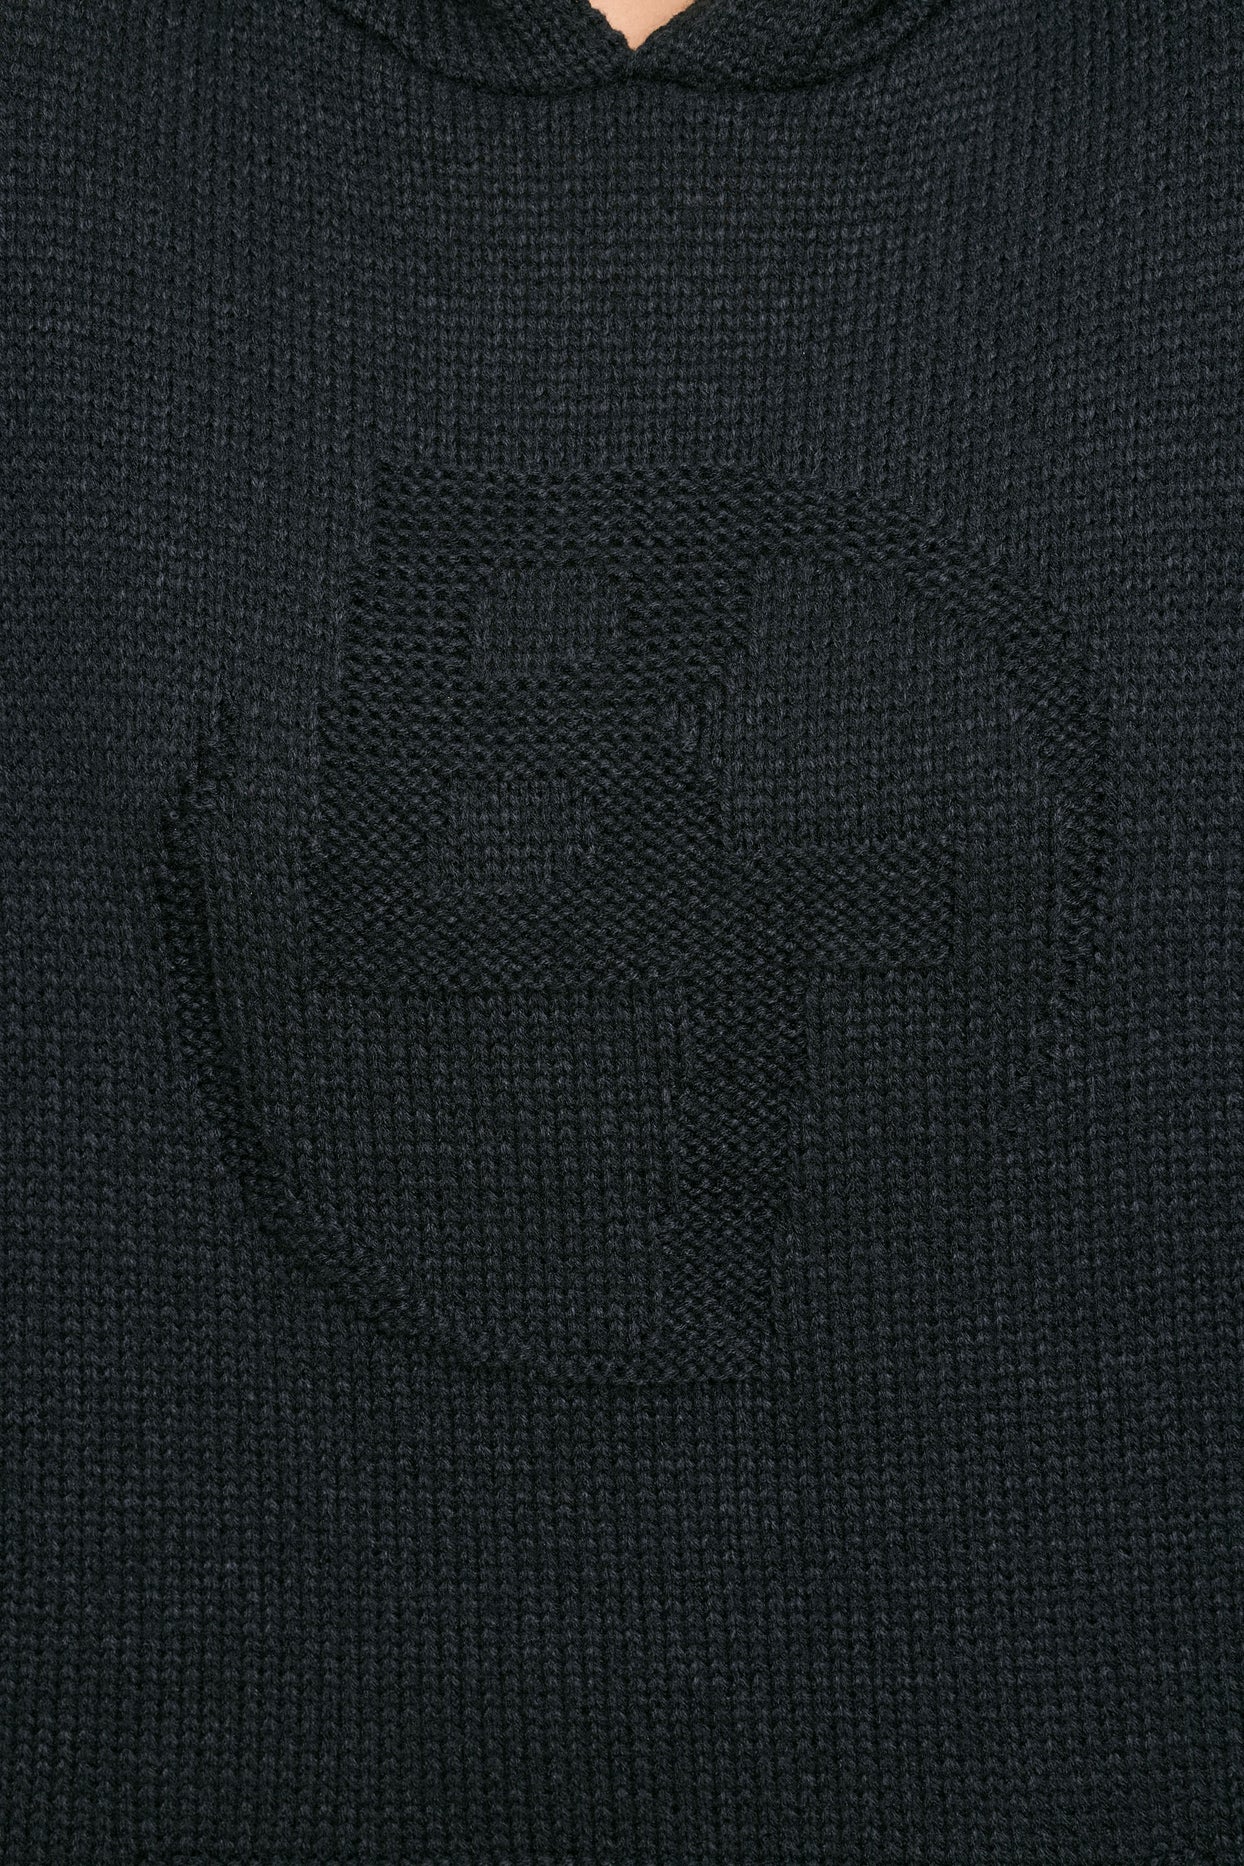 Obszerna, gruba dzianinowa bluza z kapturem w kolorze czarnym